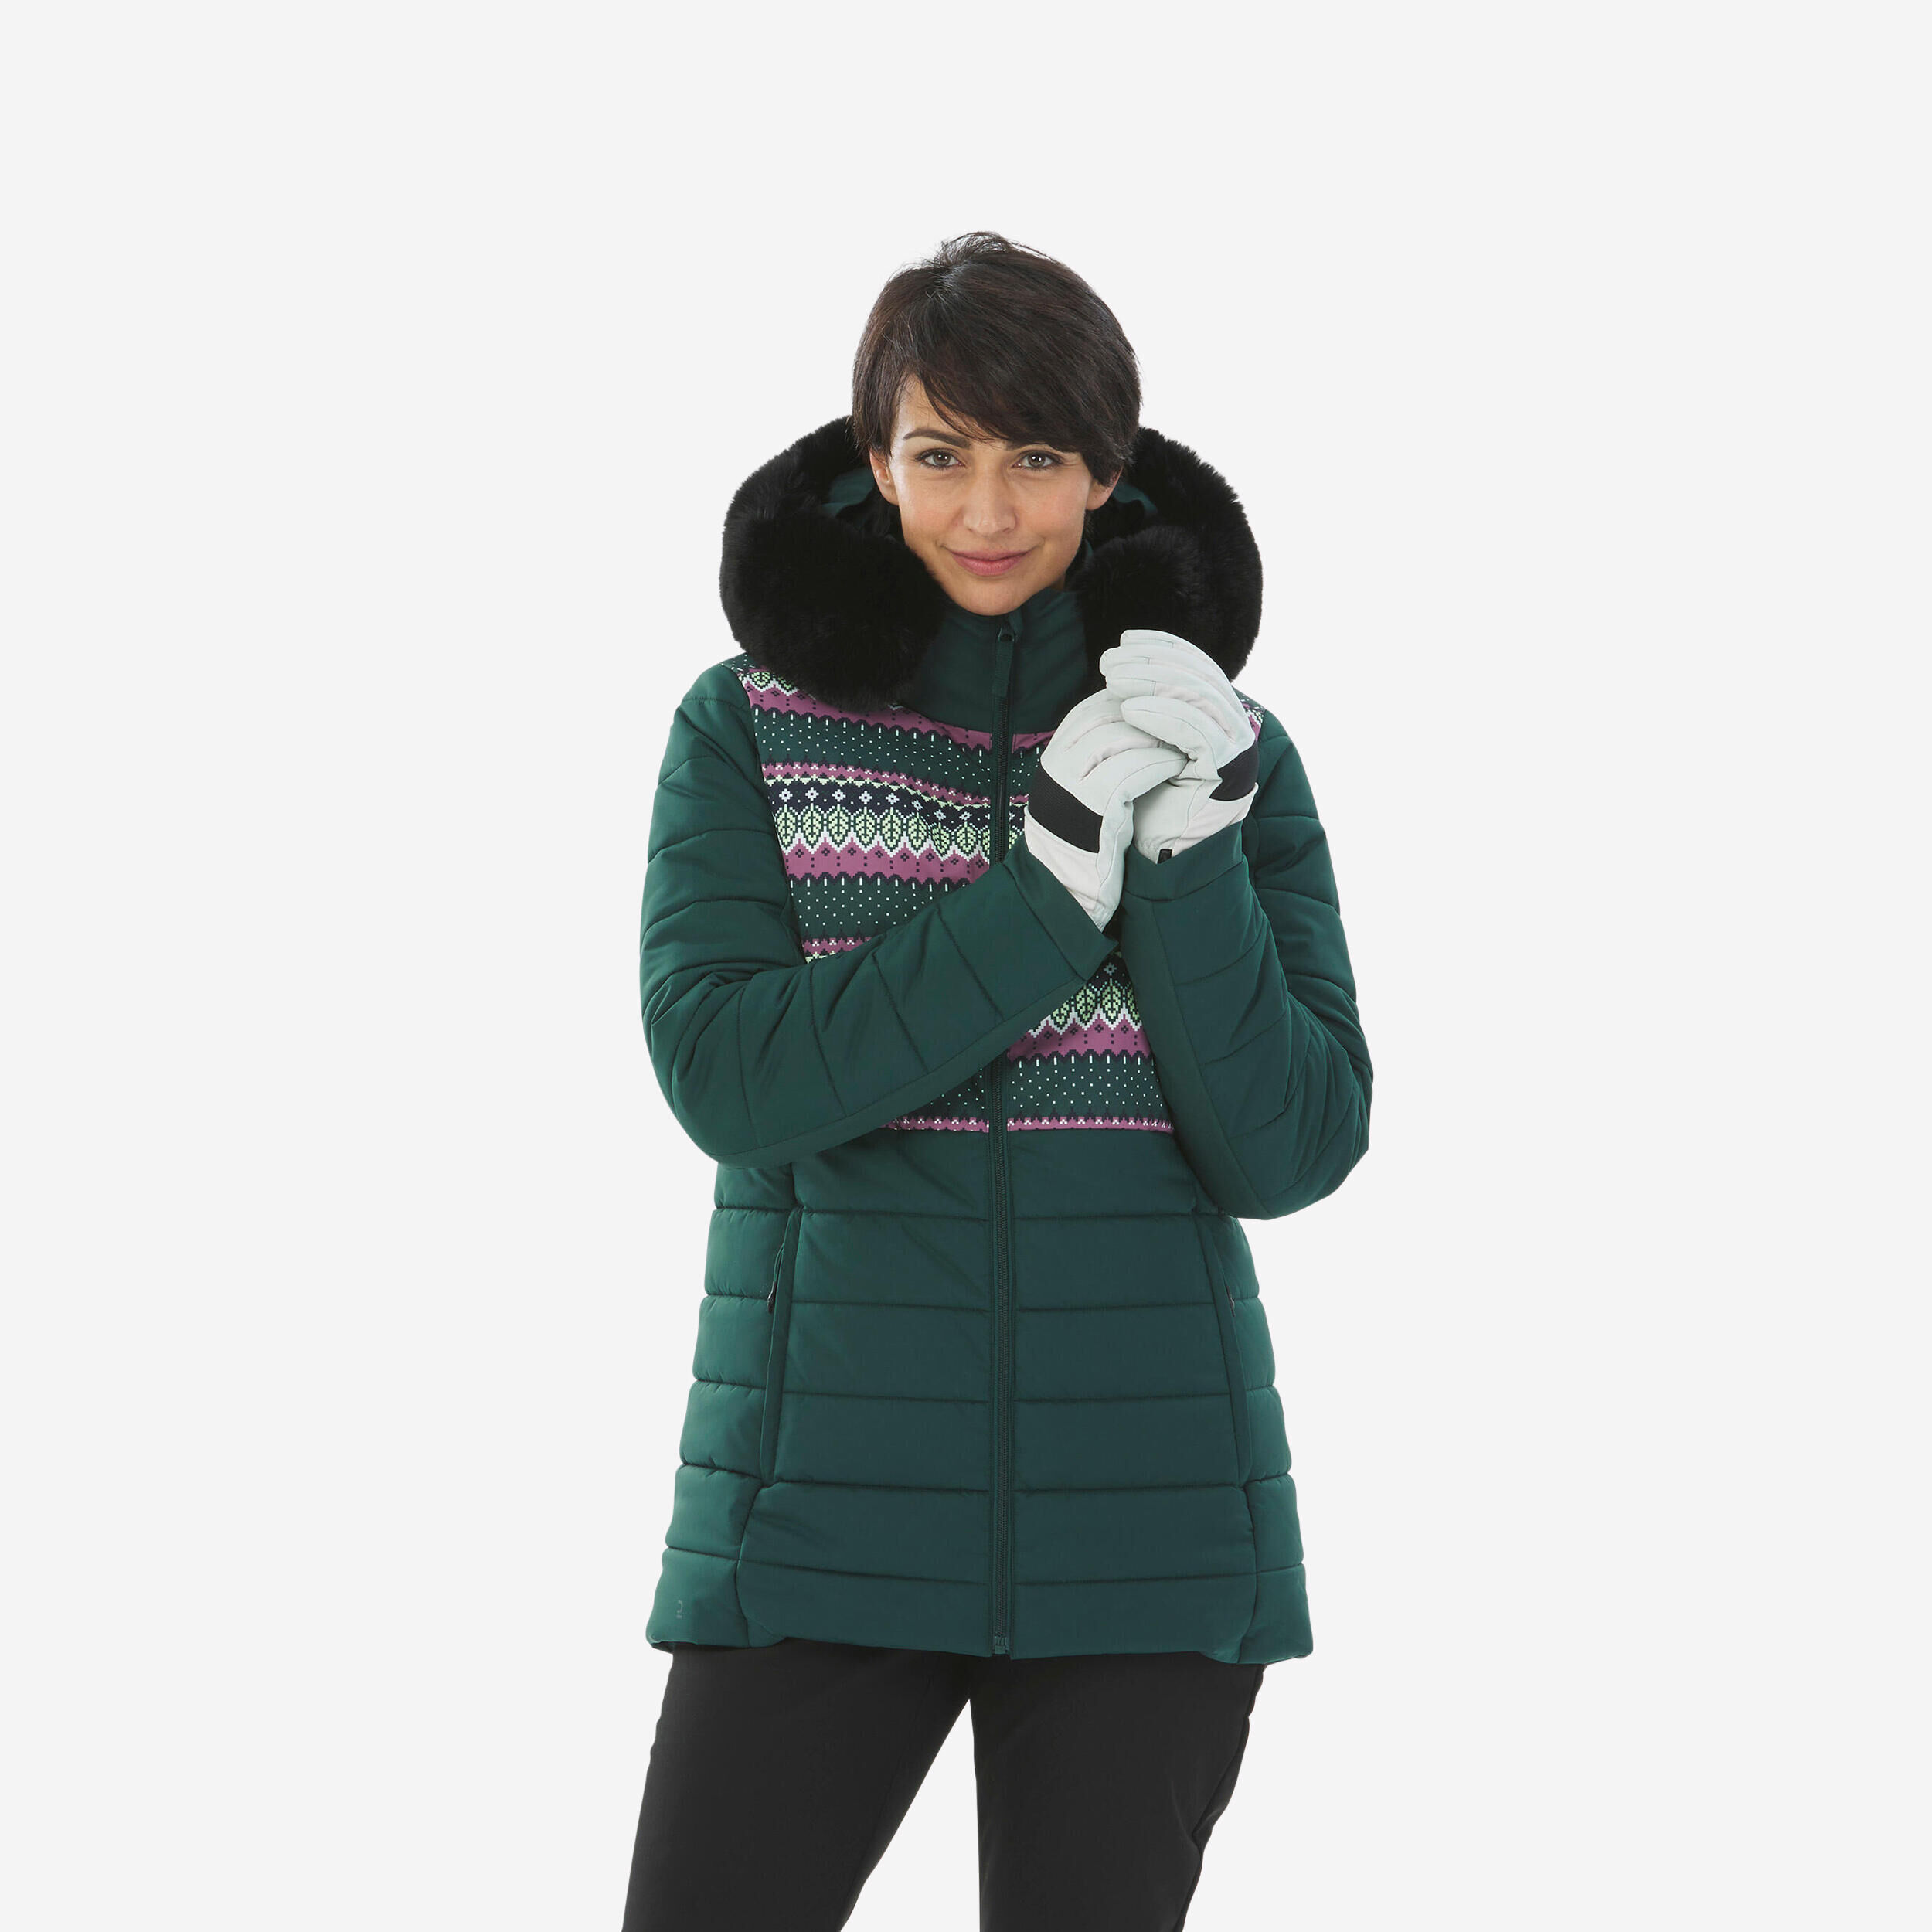 WEDZE Women's Mid-Length Warm Ski Jacket - 100 Patterned